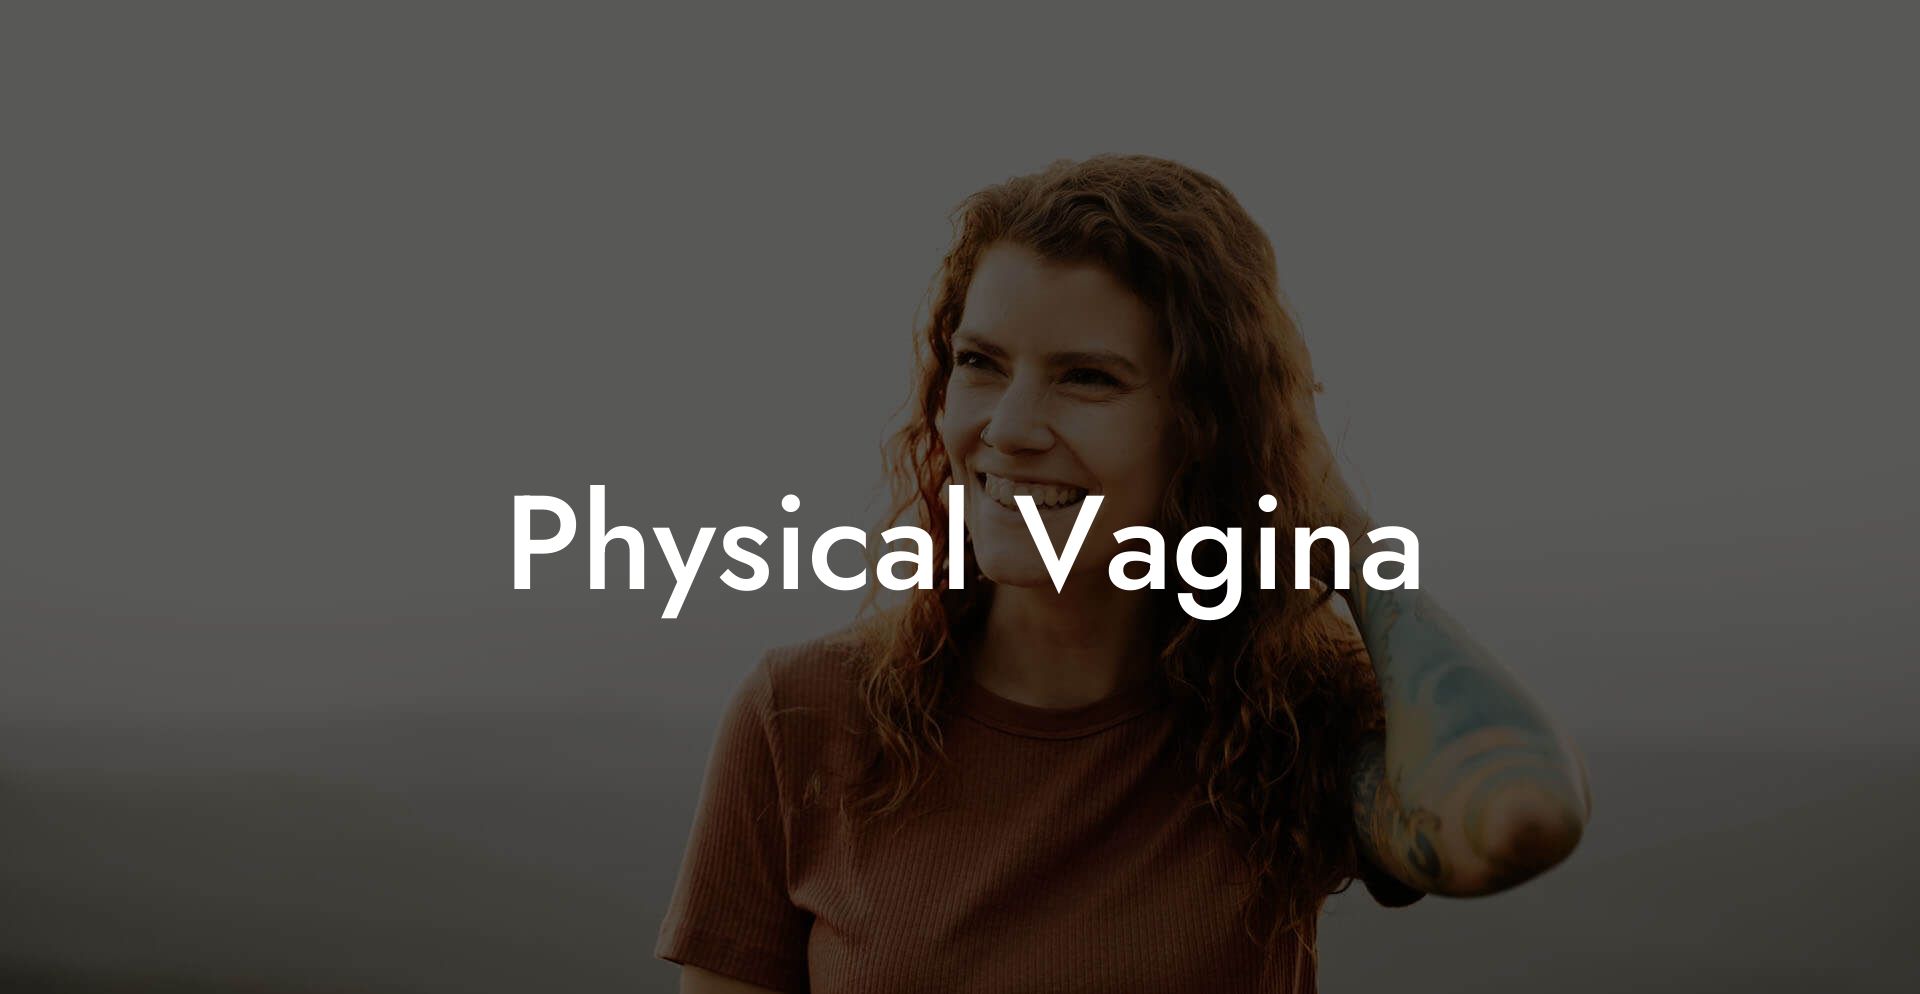 Physical Vagina